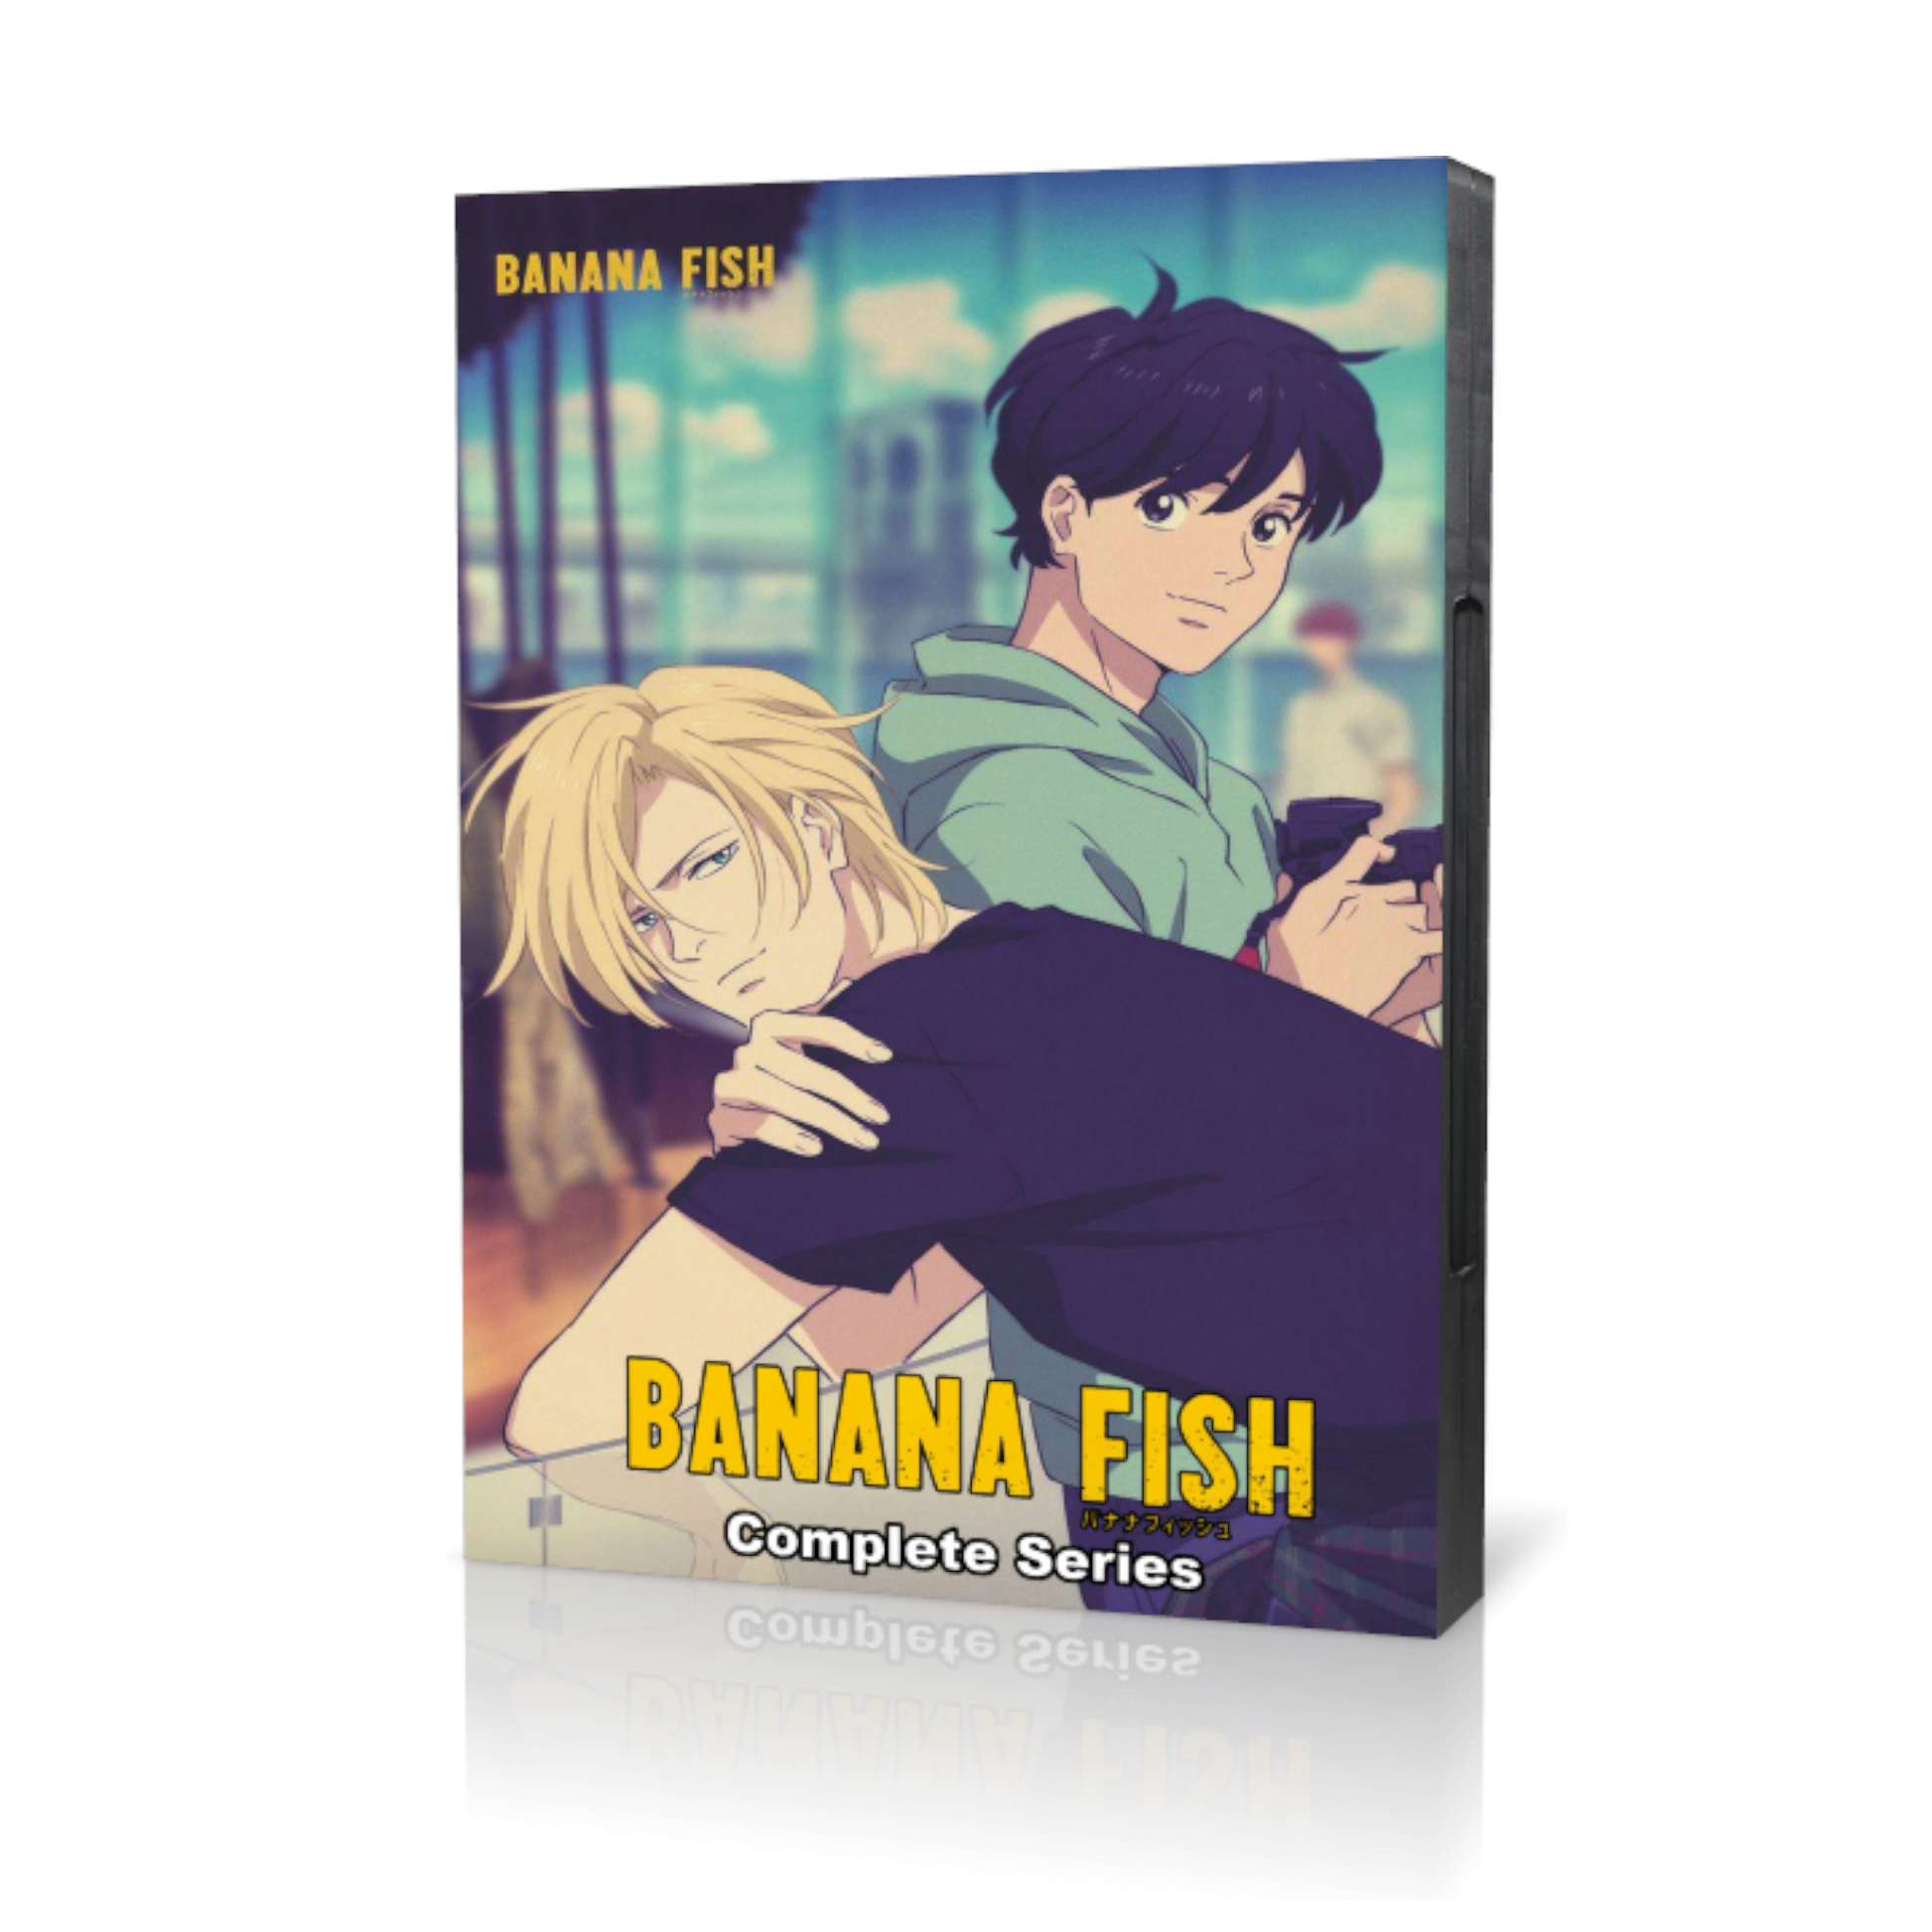 Banana Fish Complete Anime Series English Sub DVD Box Set